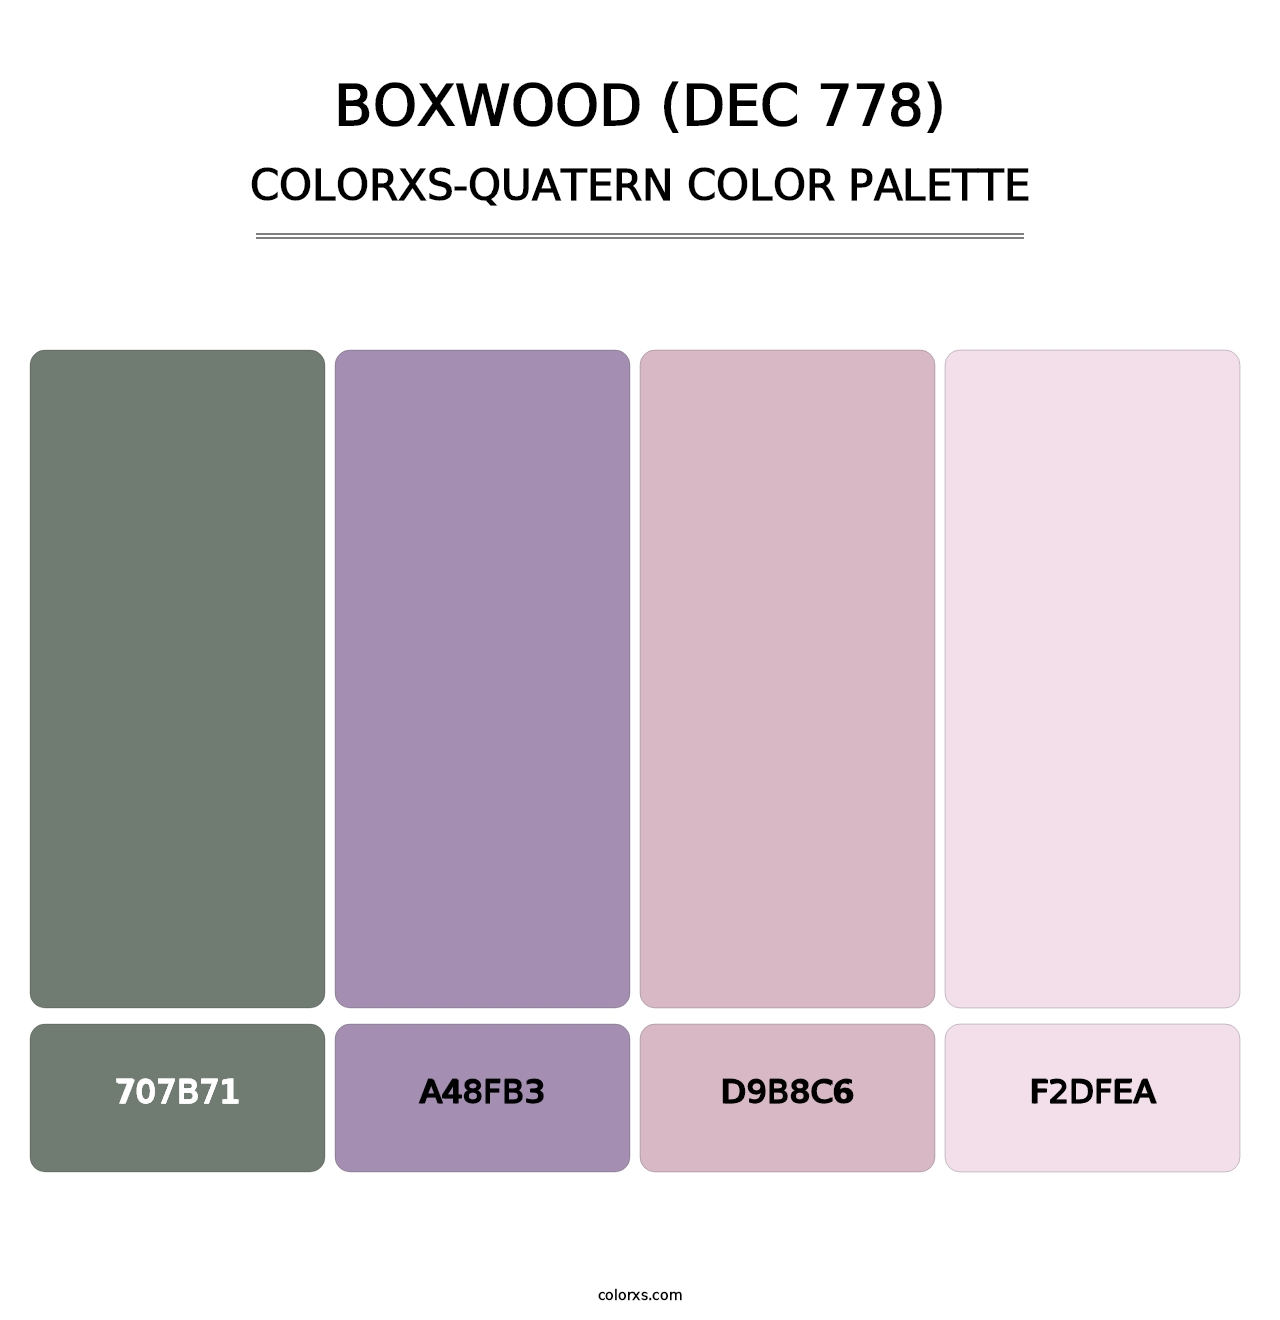 Boxwood (DEC 778) - Colorxs Quatern Palette